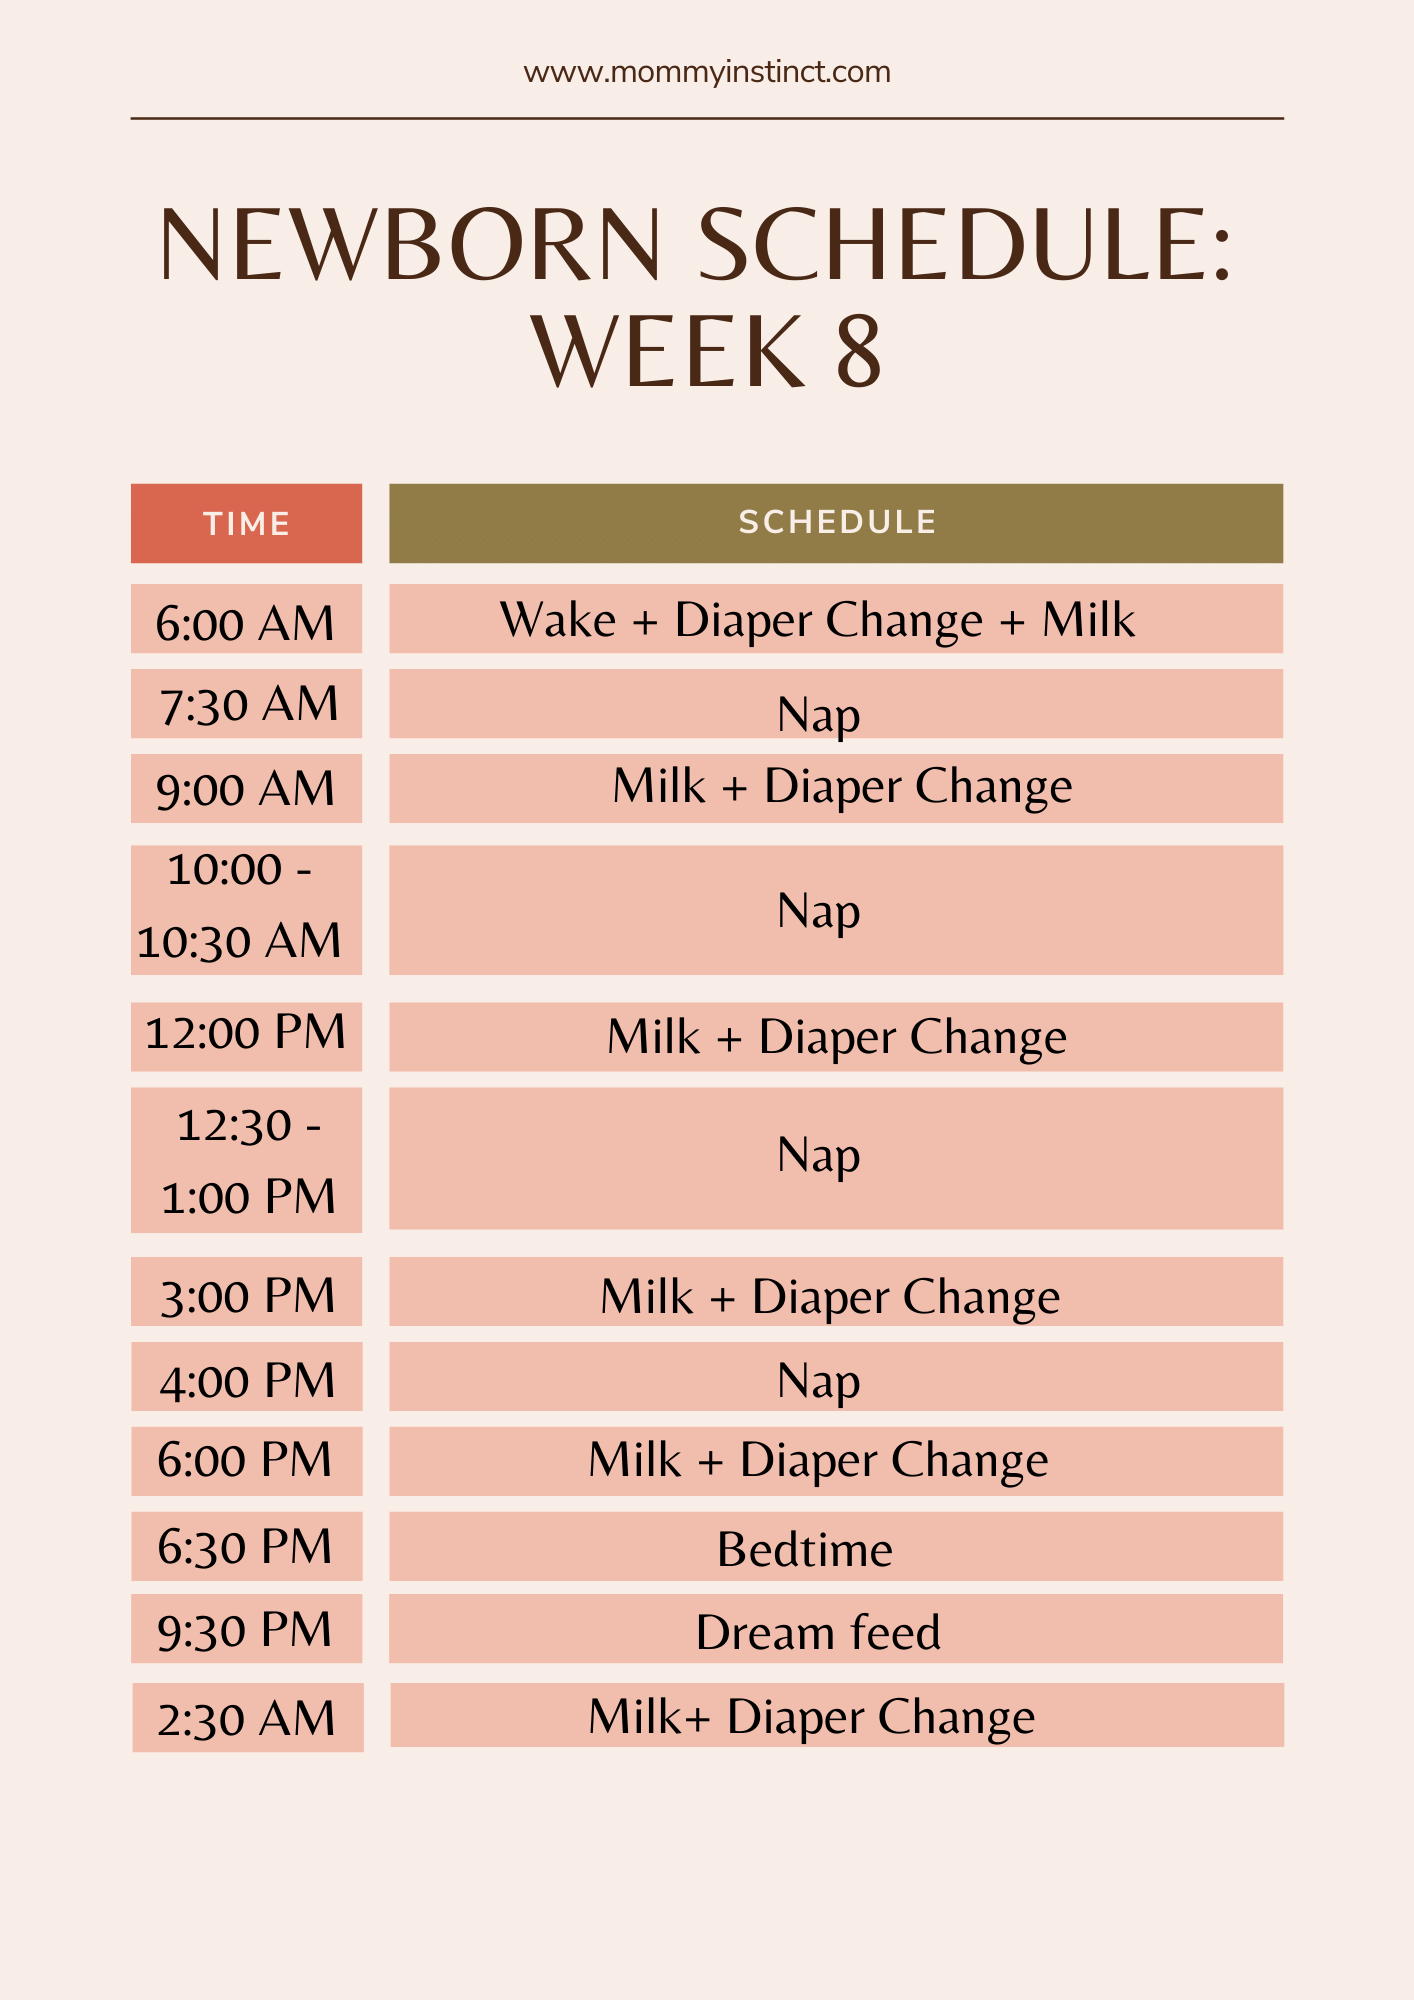 Newborn sleep schedule week 8